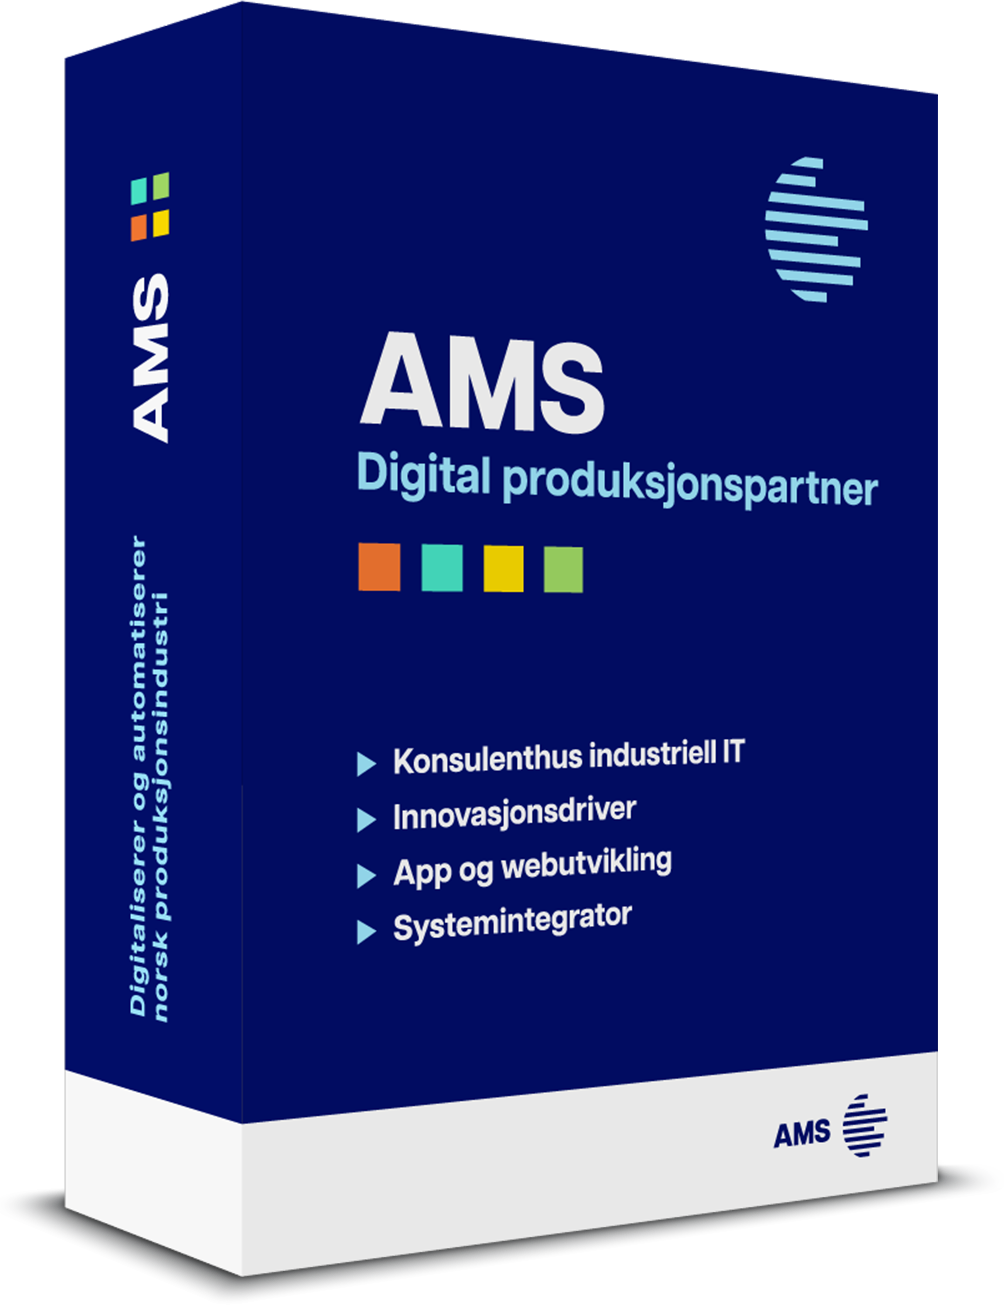 AMS er et konsulenthus og fagmiljø med rådgivere og konsulenter som gjennom mer enn 35 år har levert tjenester innen industriell IT. Som digital produksjonspartner og systemintegrator hjelper vi bedrifter med utvikling av løsninger som kompletterer eksisterende og integrerer nye systemer. Din rådgivende digitaliserings­partner og innovasjons­driver.